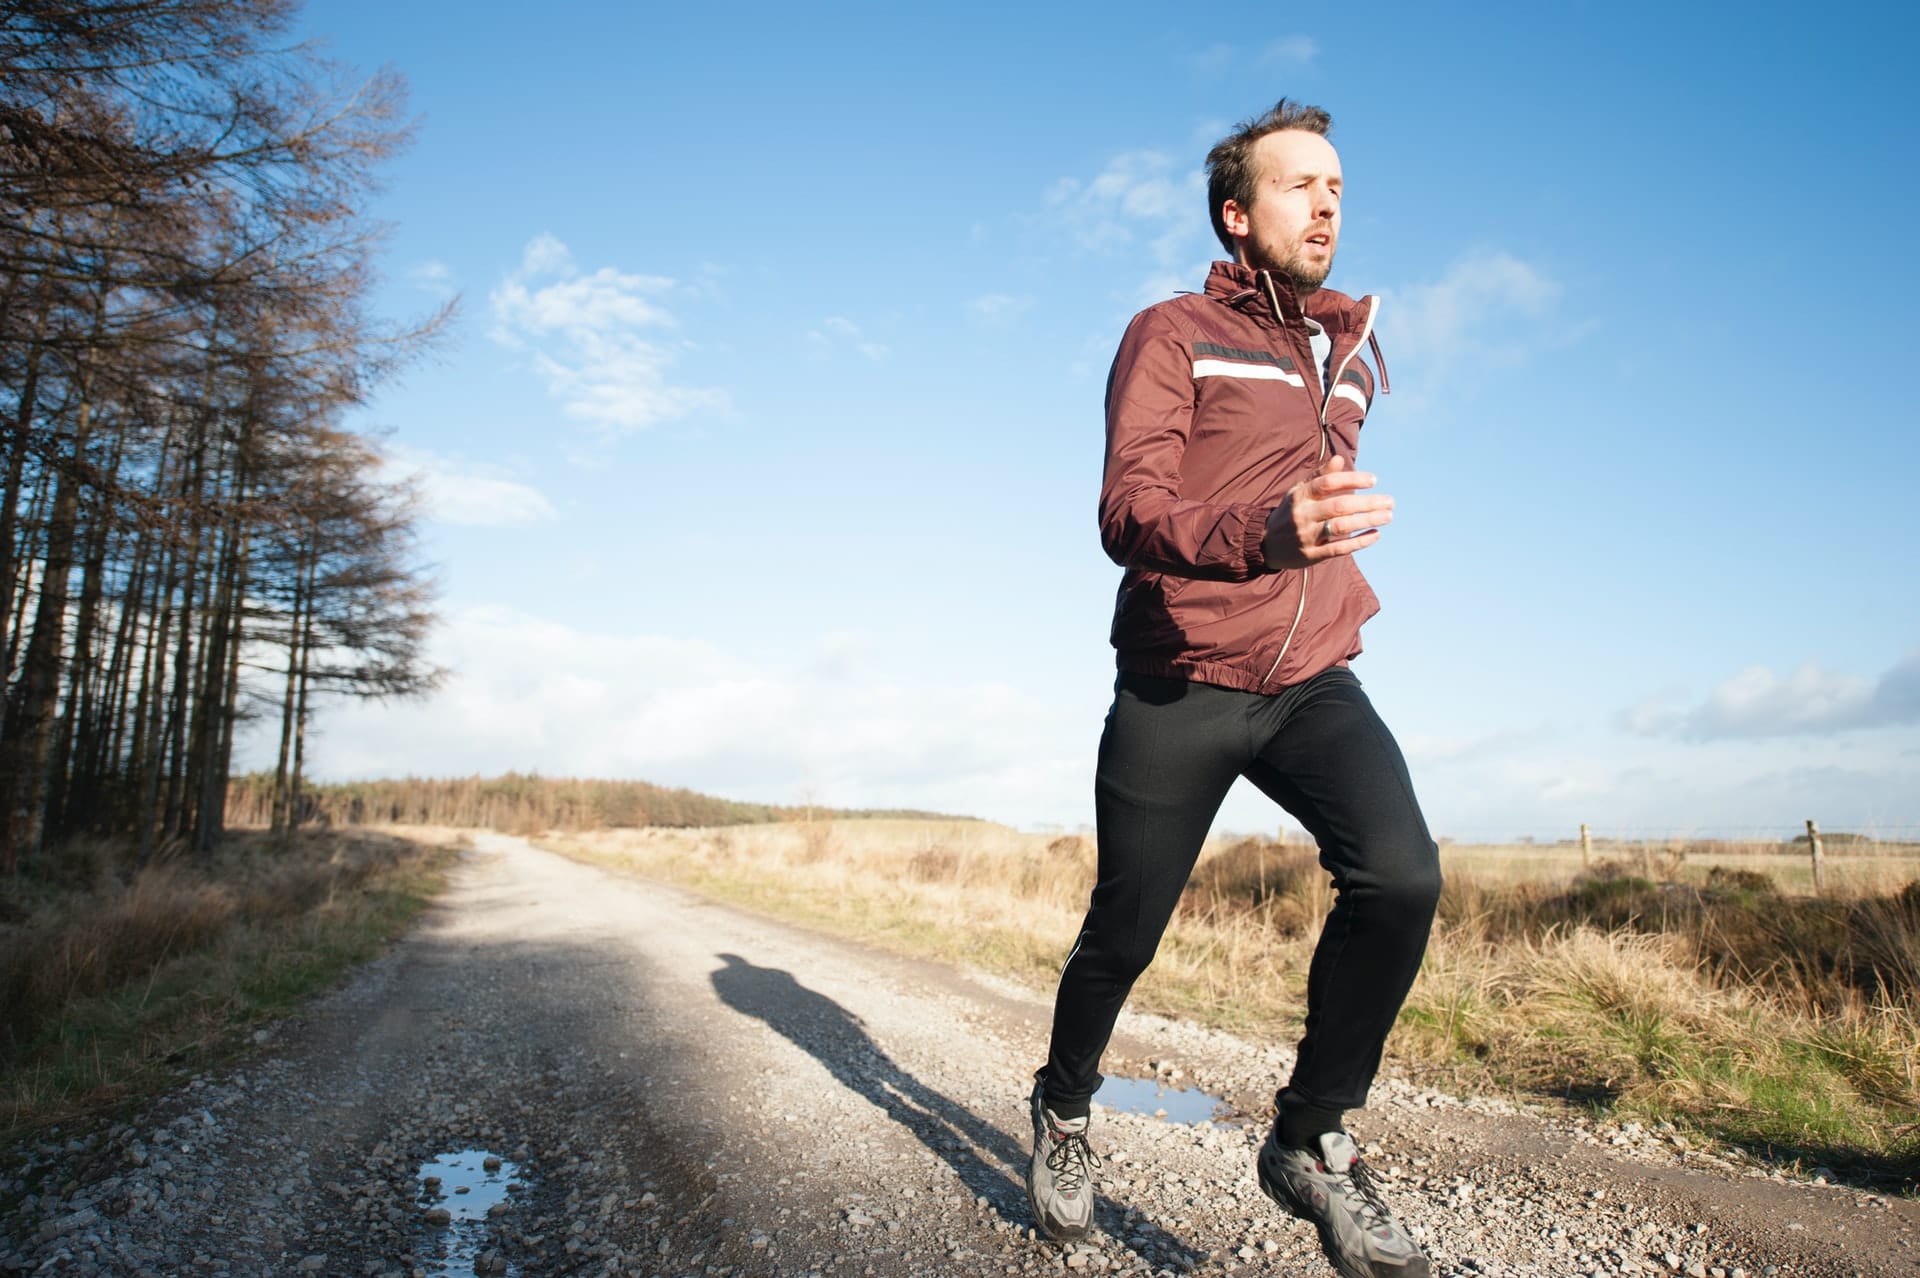 Comment bien s'habiller pour la course à pied ? Conseils pour homme